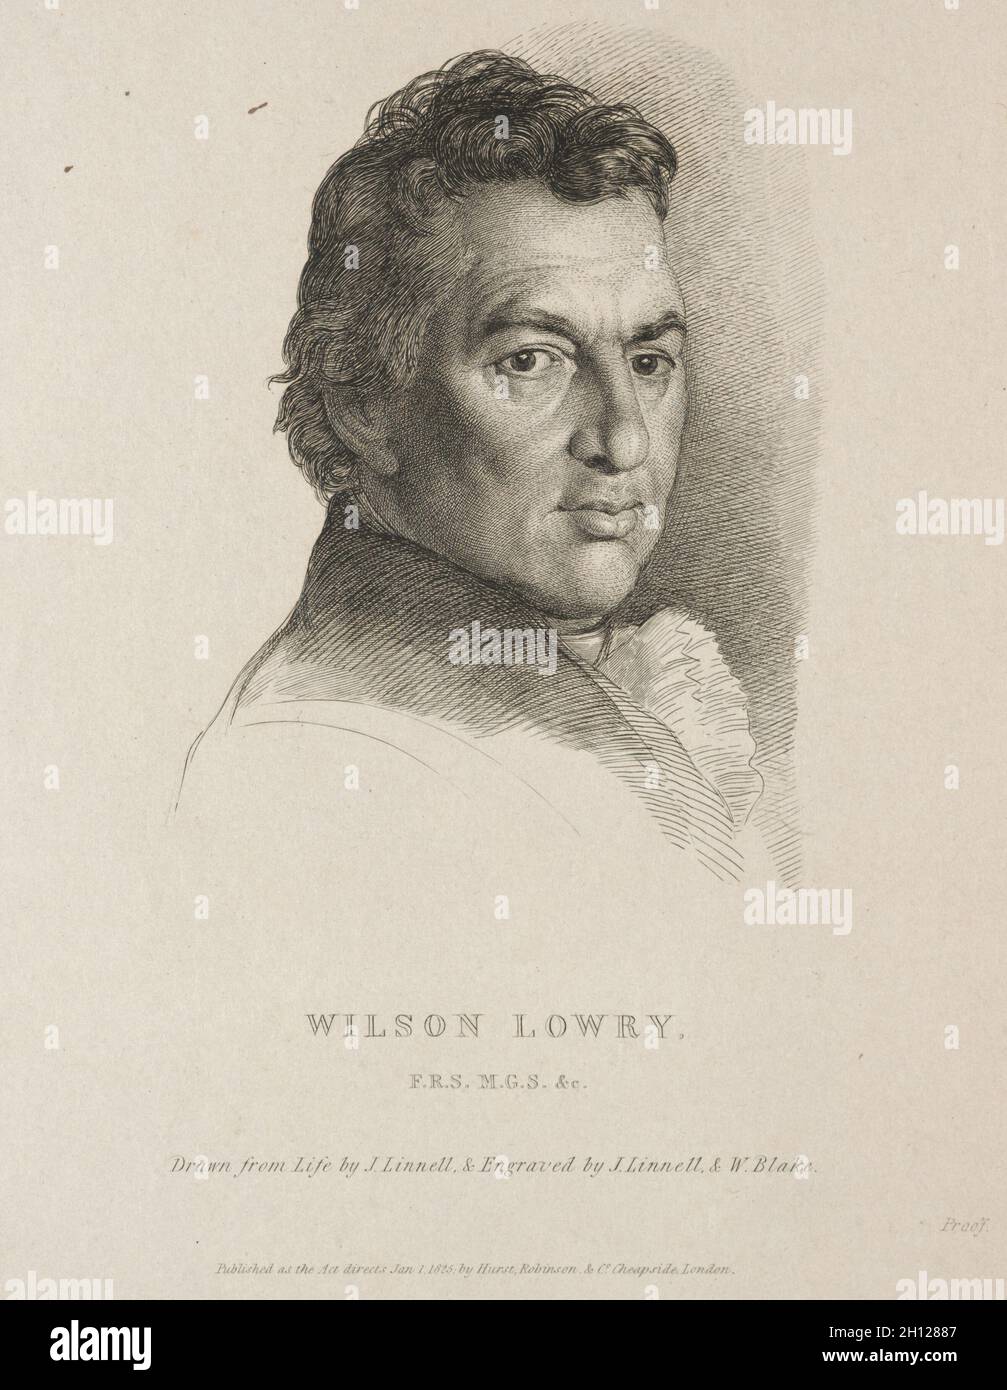 Wilson Lowry, 1825. William Blake (British, 1757-1827), and John Linnell (British, 1792-1882). Engraving; Stock Photo